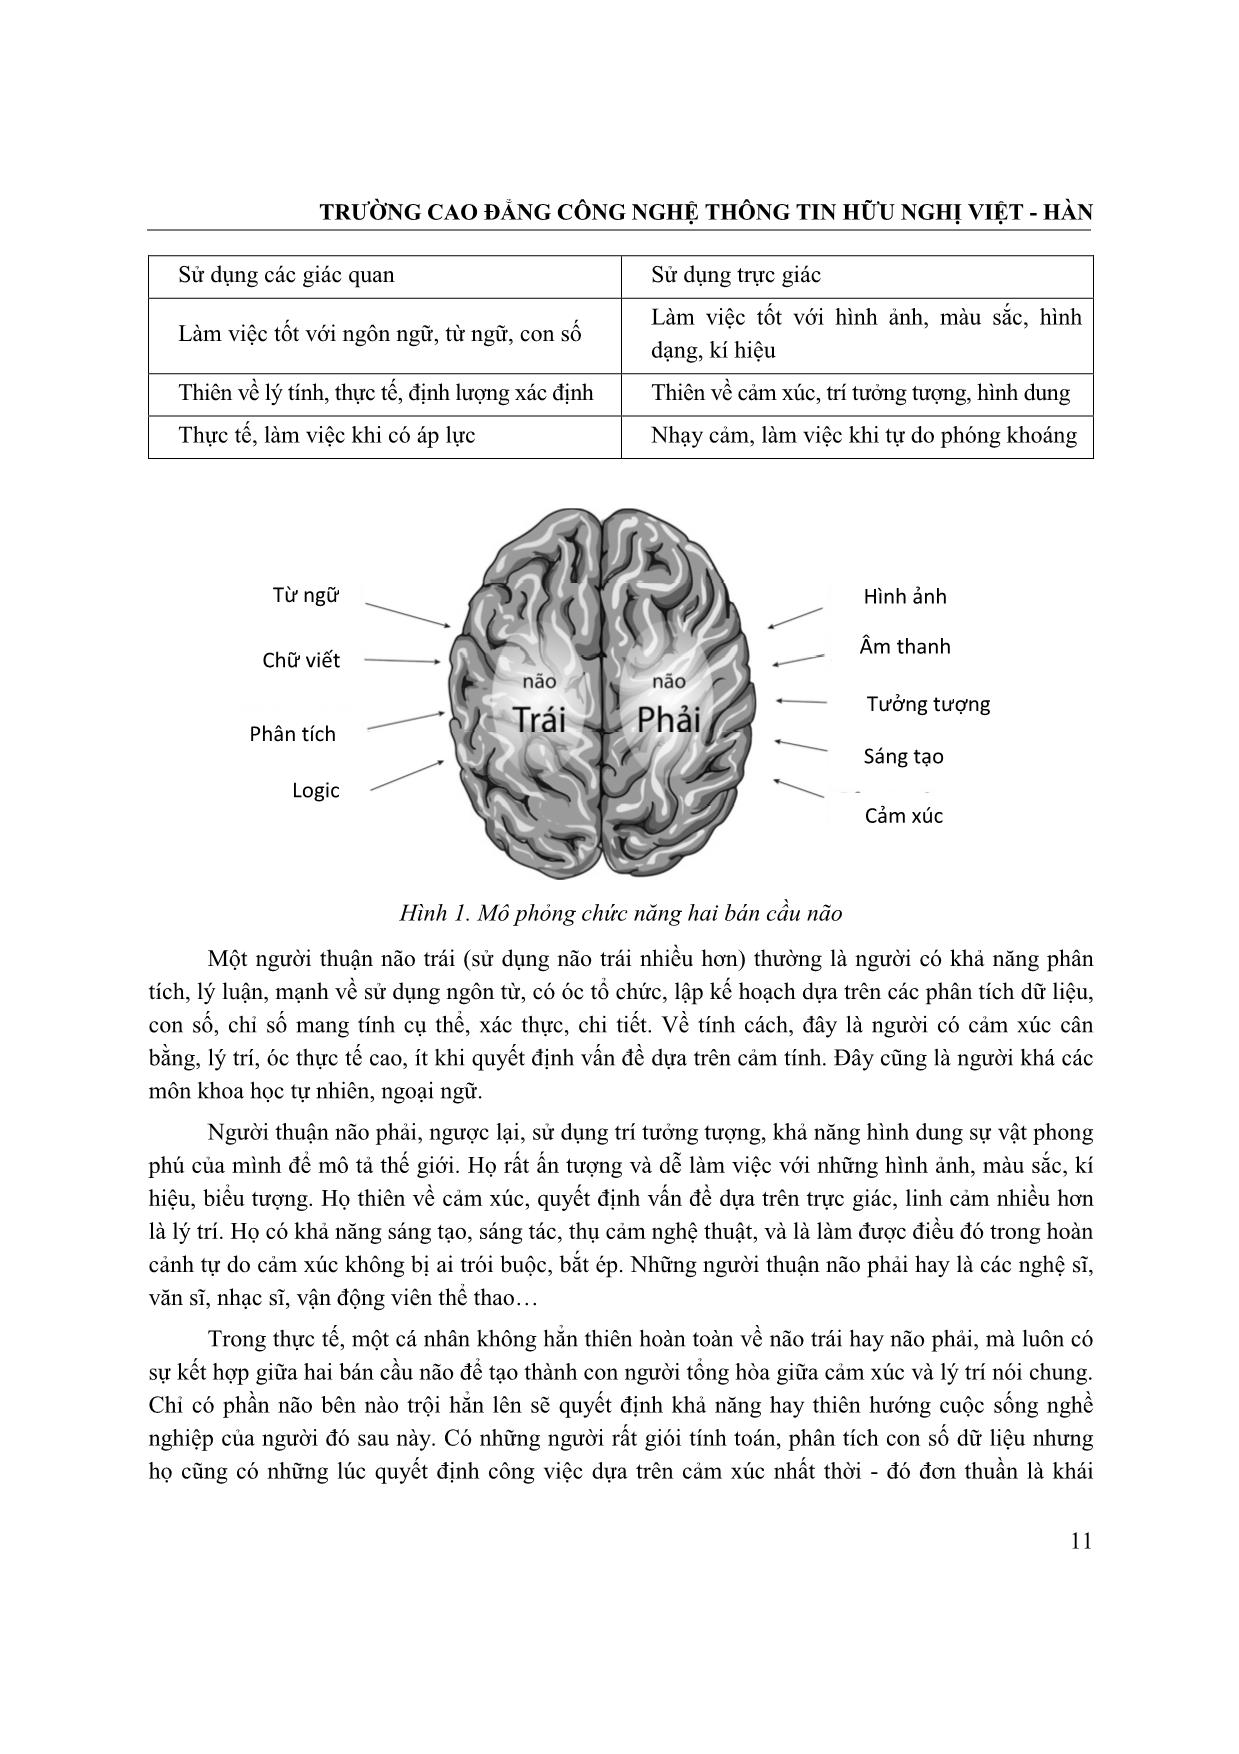 Sketchnote - Kỹ thuật ghi chú thông tin ứng dụng phương pháp “Whole brain learning” trang 5